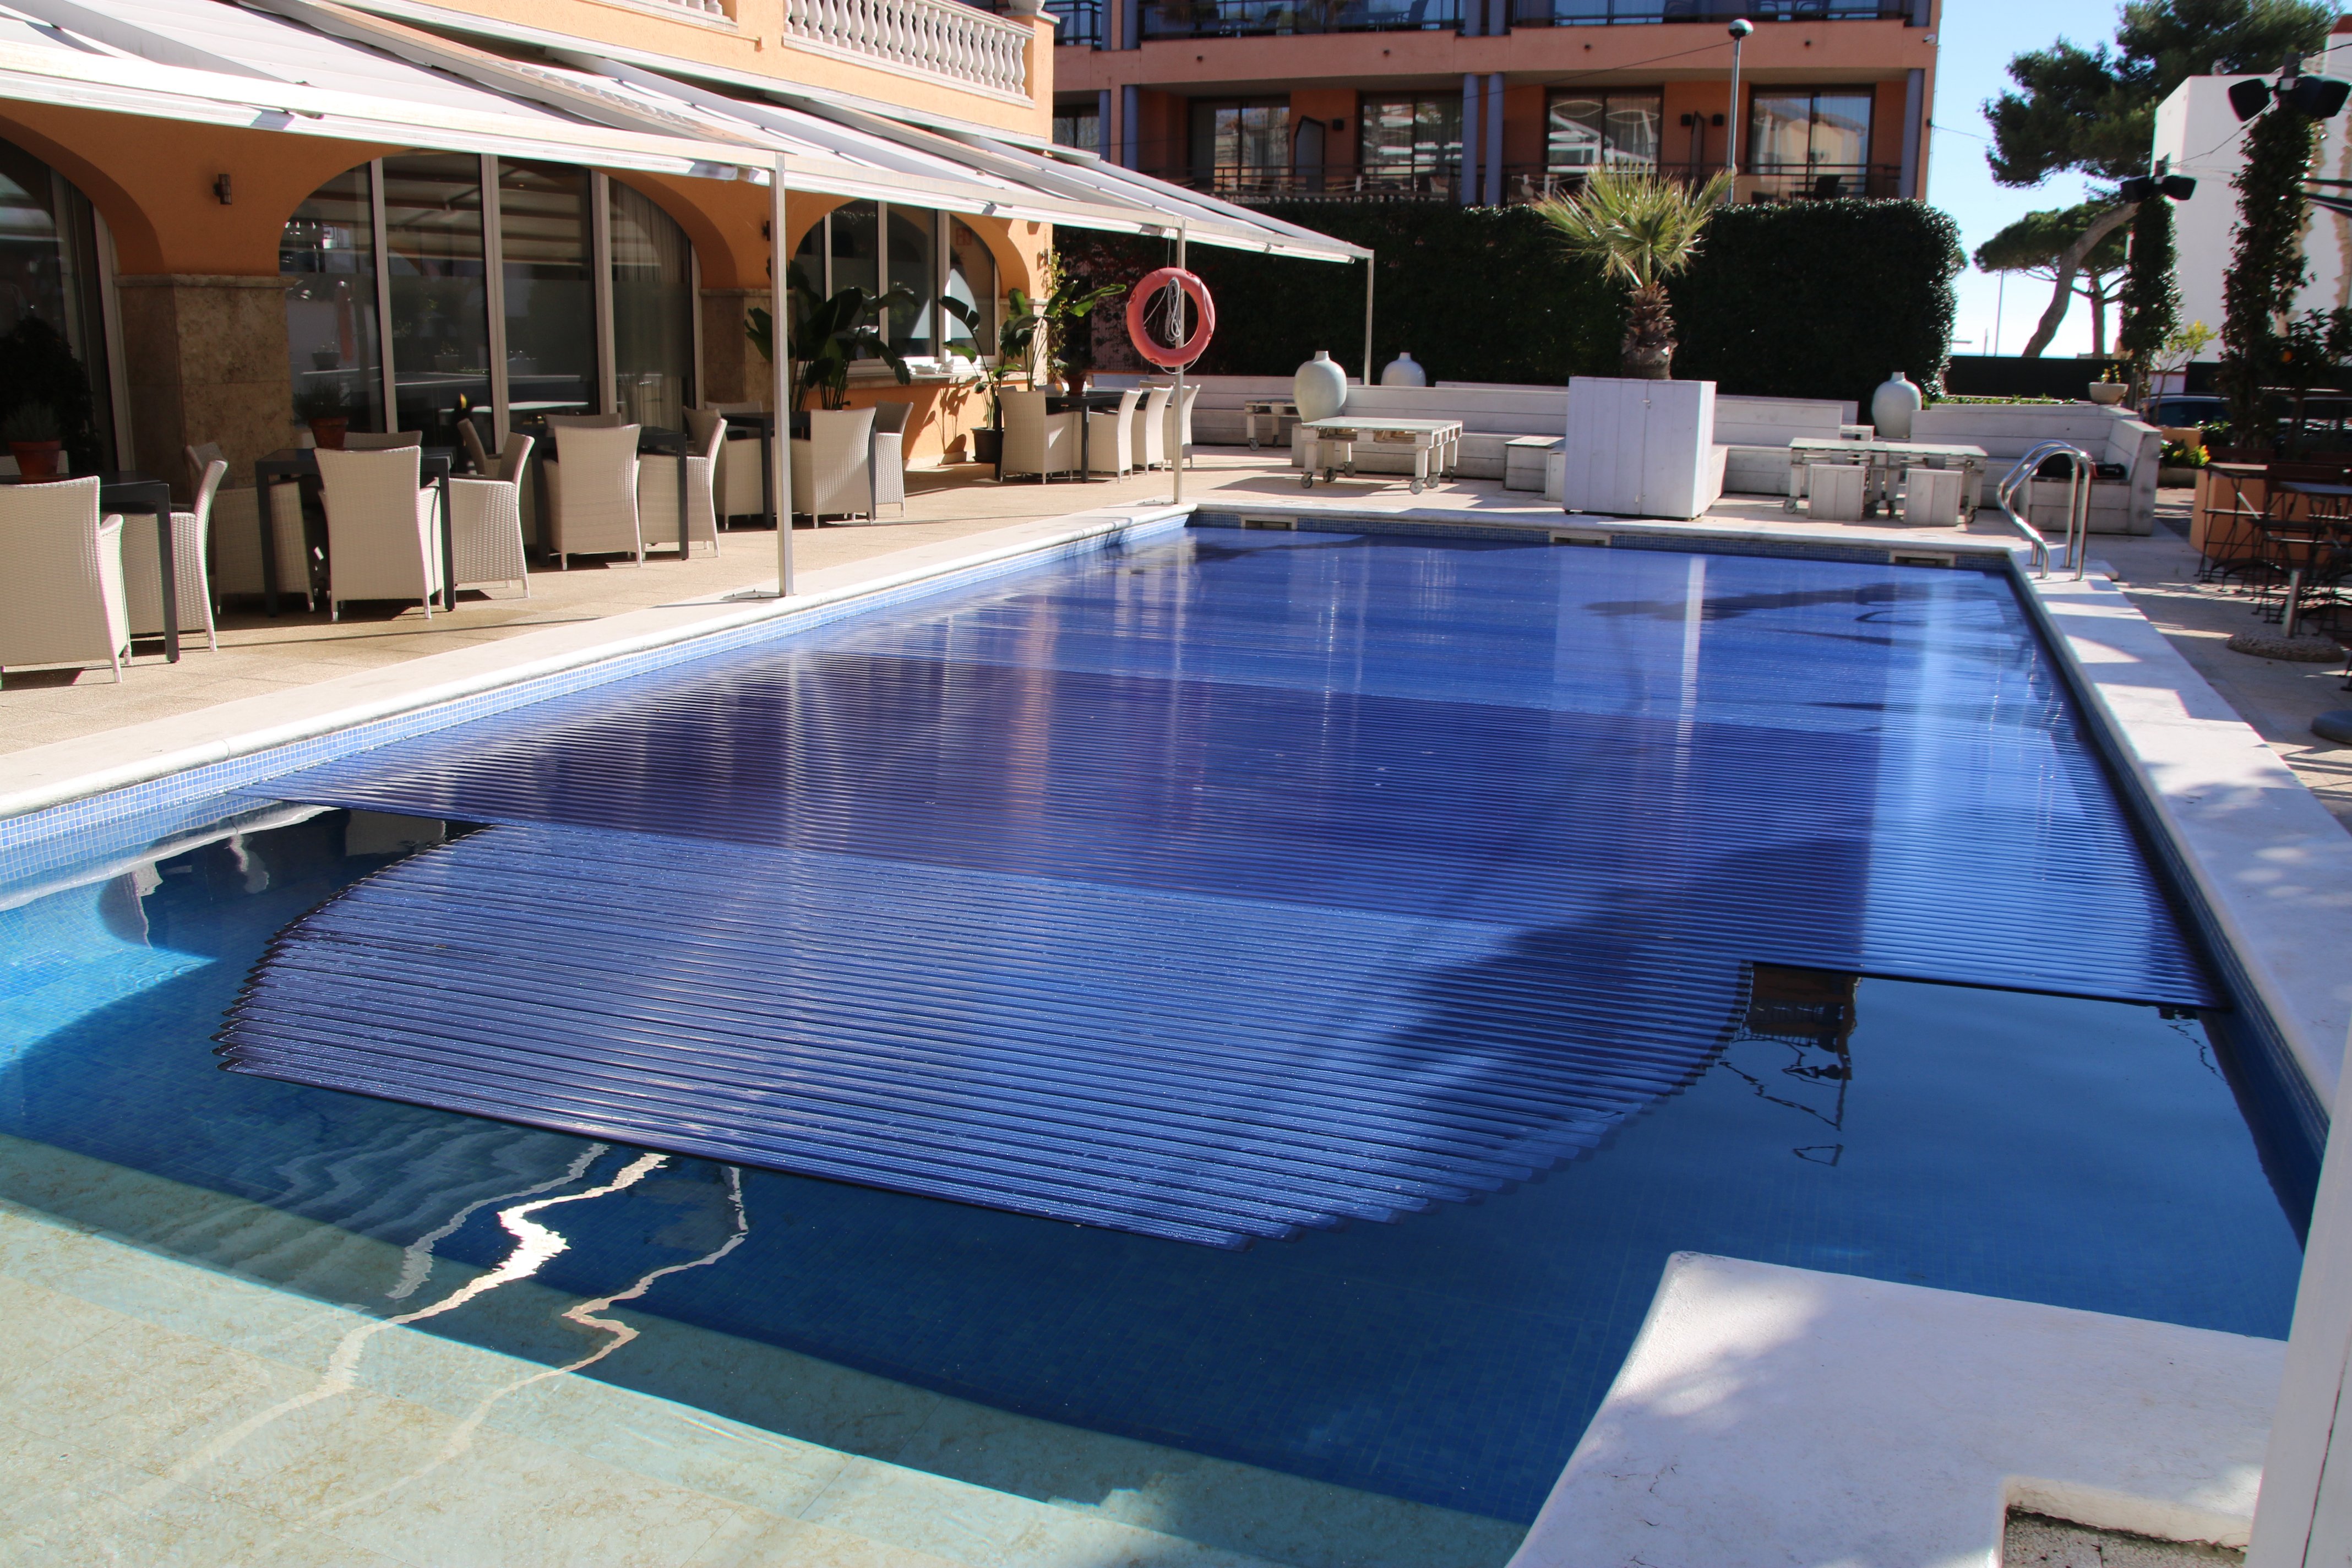 Los hoteles de Barcelona, a favor de que las piscinas privadas sean consideradas refugios climáticos